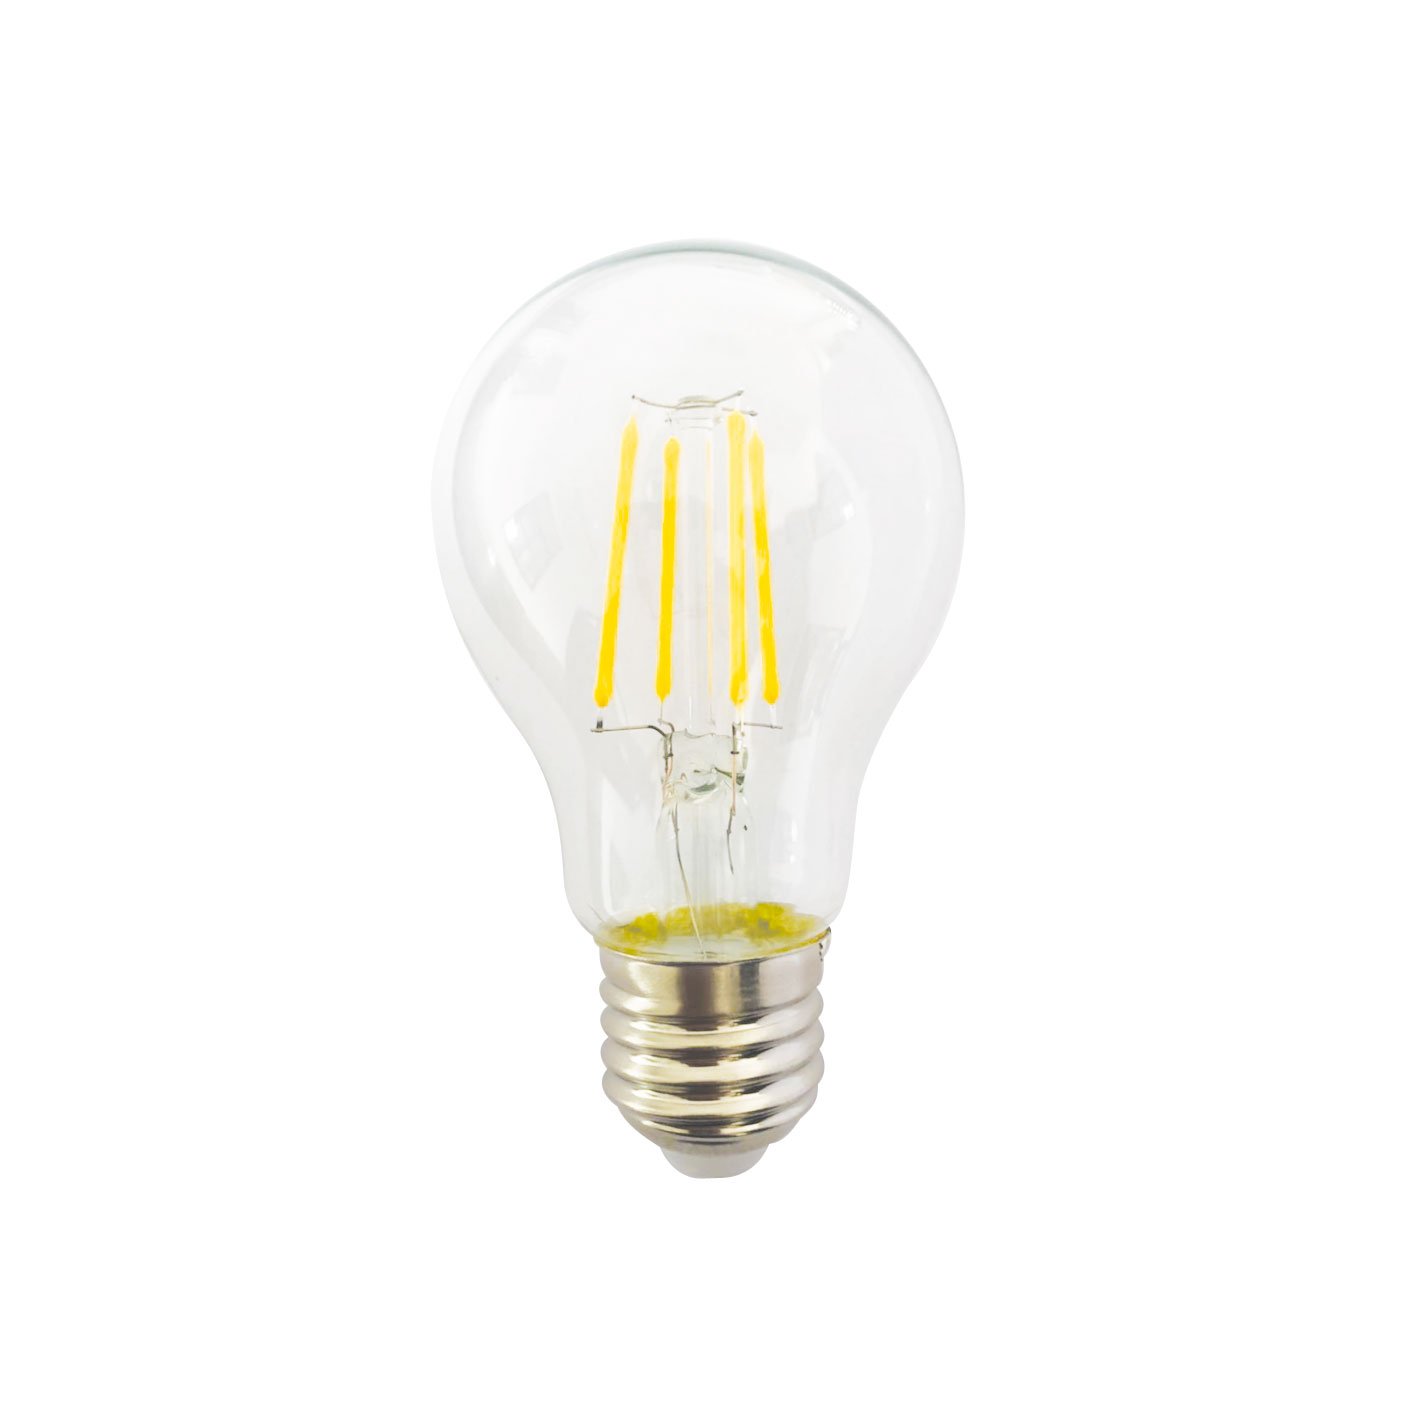 Billiga LED Glödlampa Filament E27 4W online på nätet